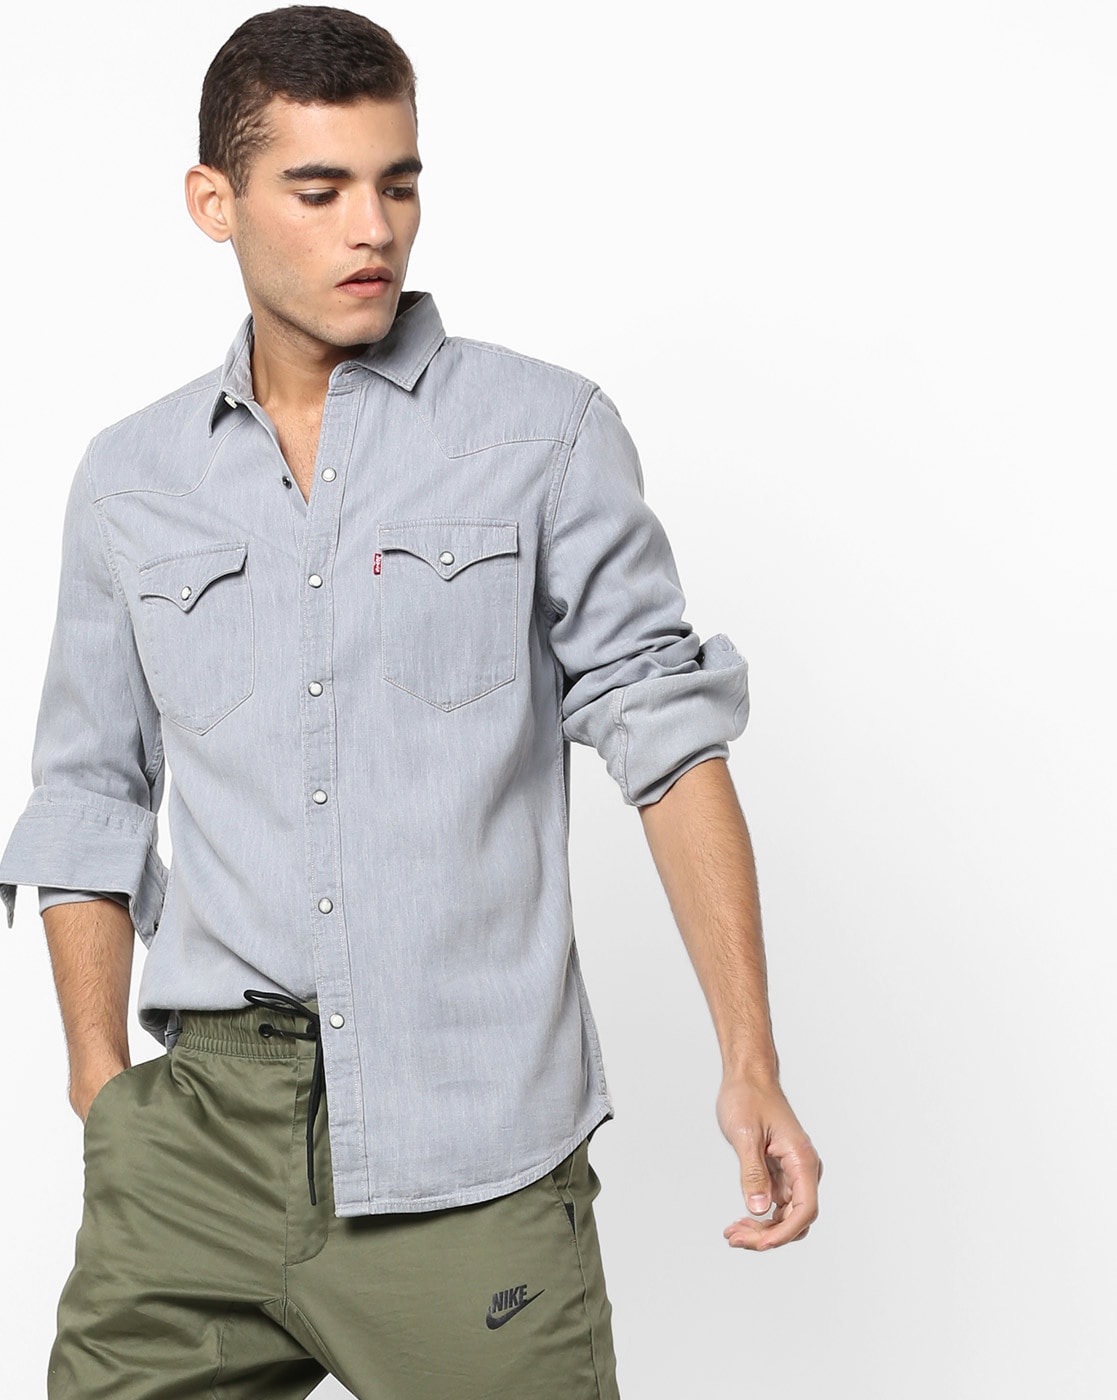 Short Sleeve Denim Shirt Men's Casual Denim Shirt Fashion Double Pocket  Denim Shirt | Wish